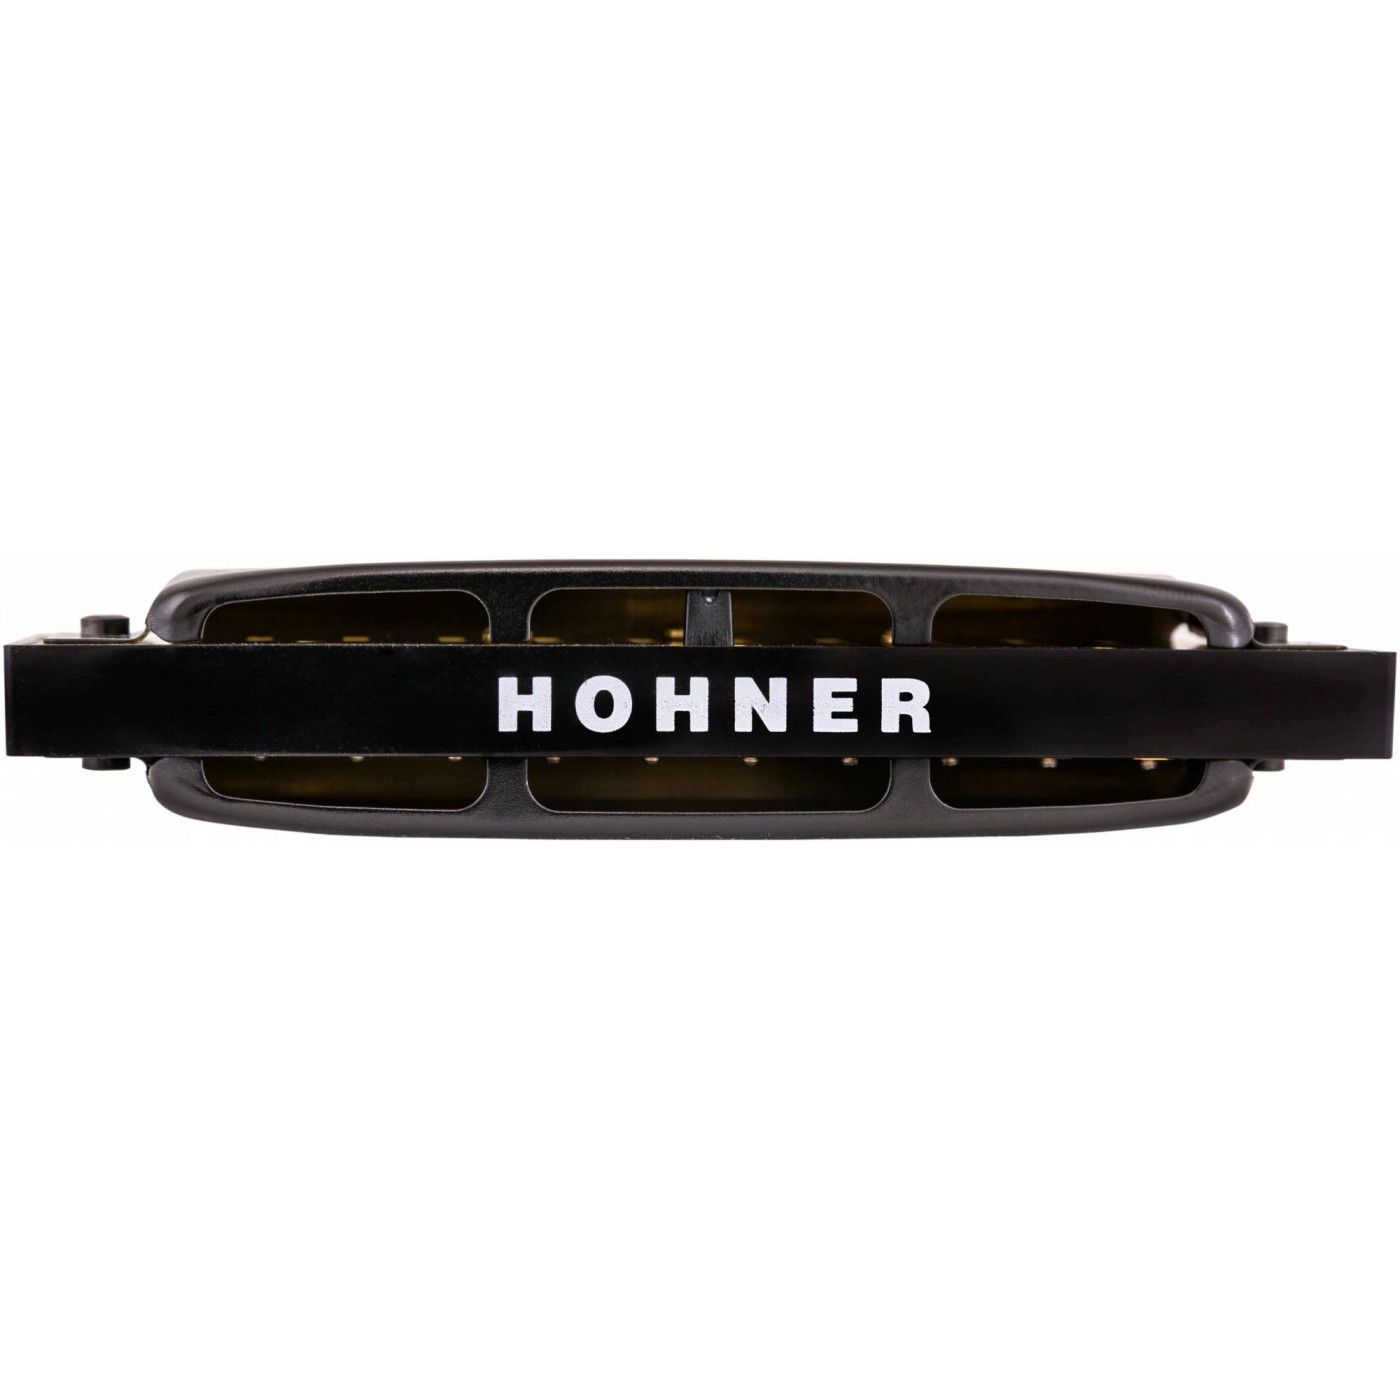 Детальная картинка товара Hohner Pro Harp 562/20 MS D в магазине Музыкальный Мир